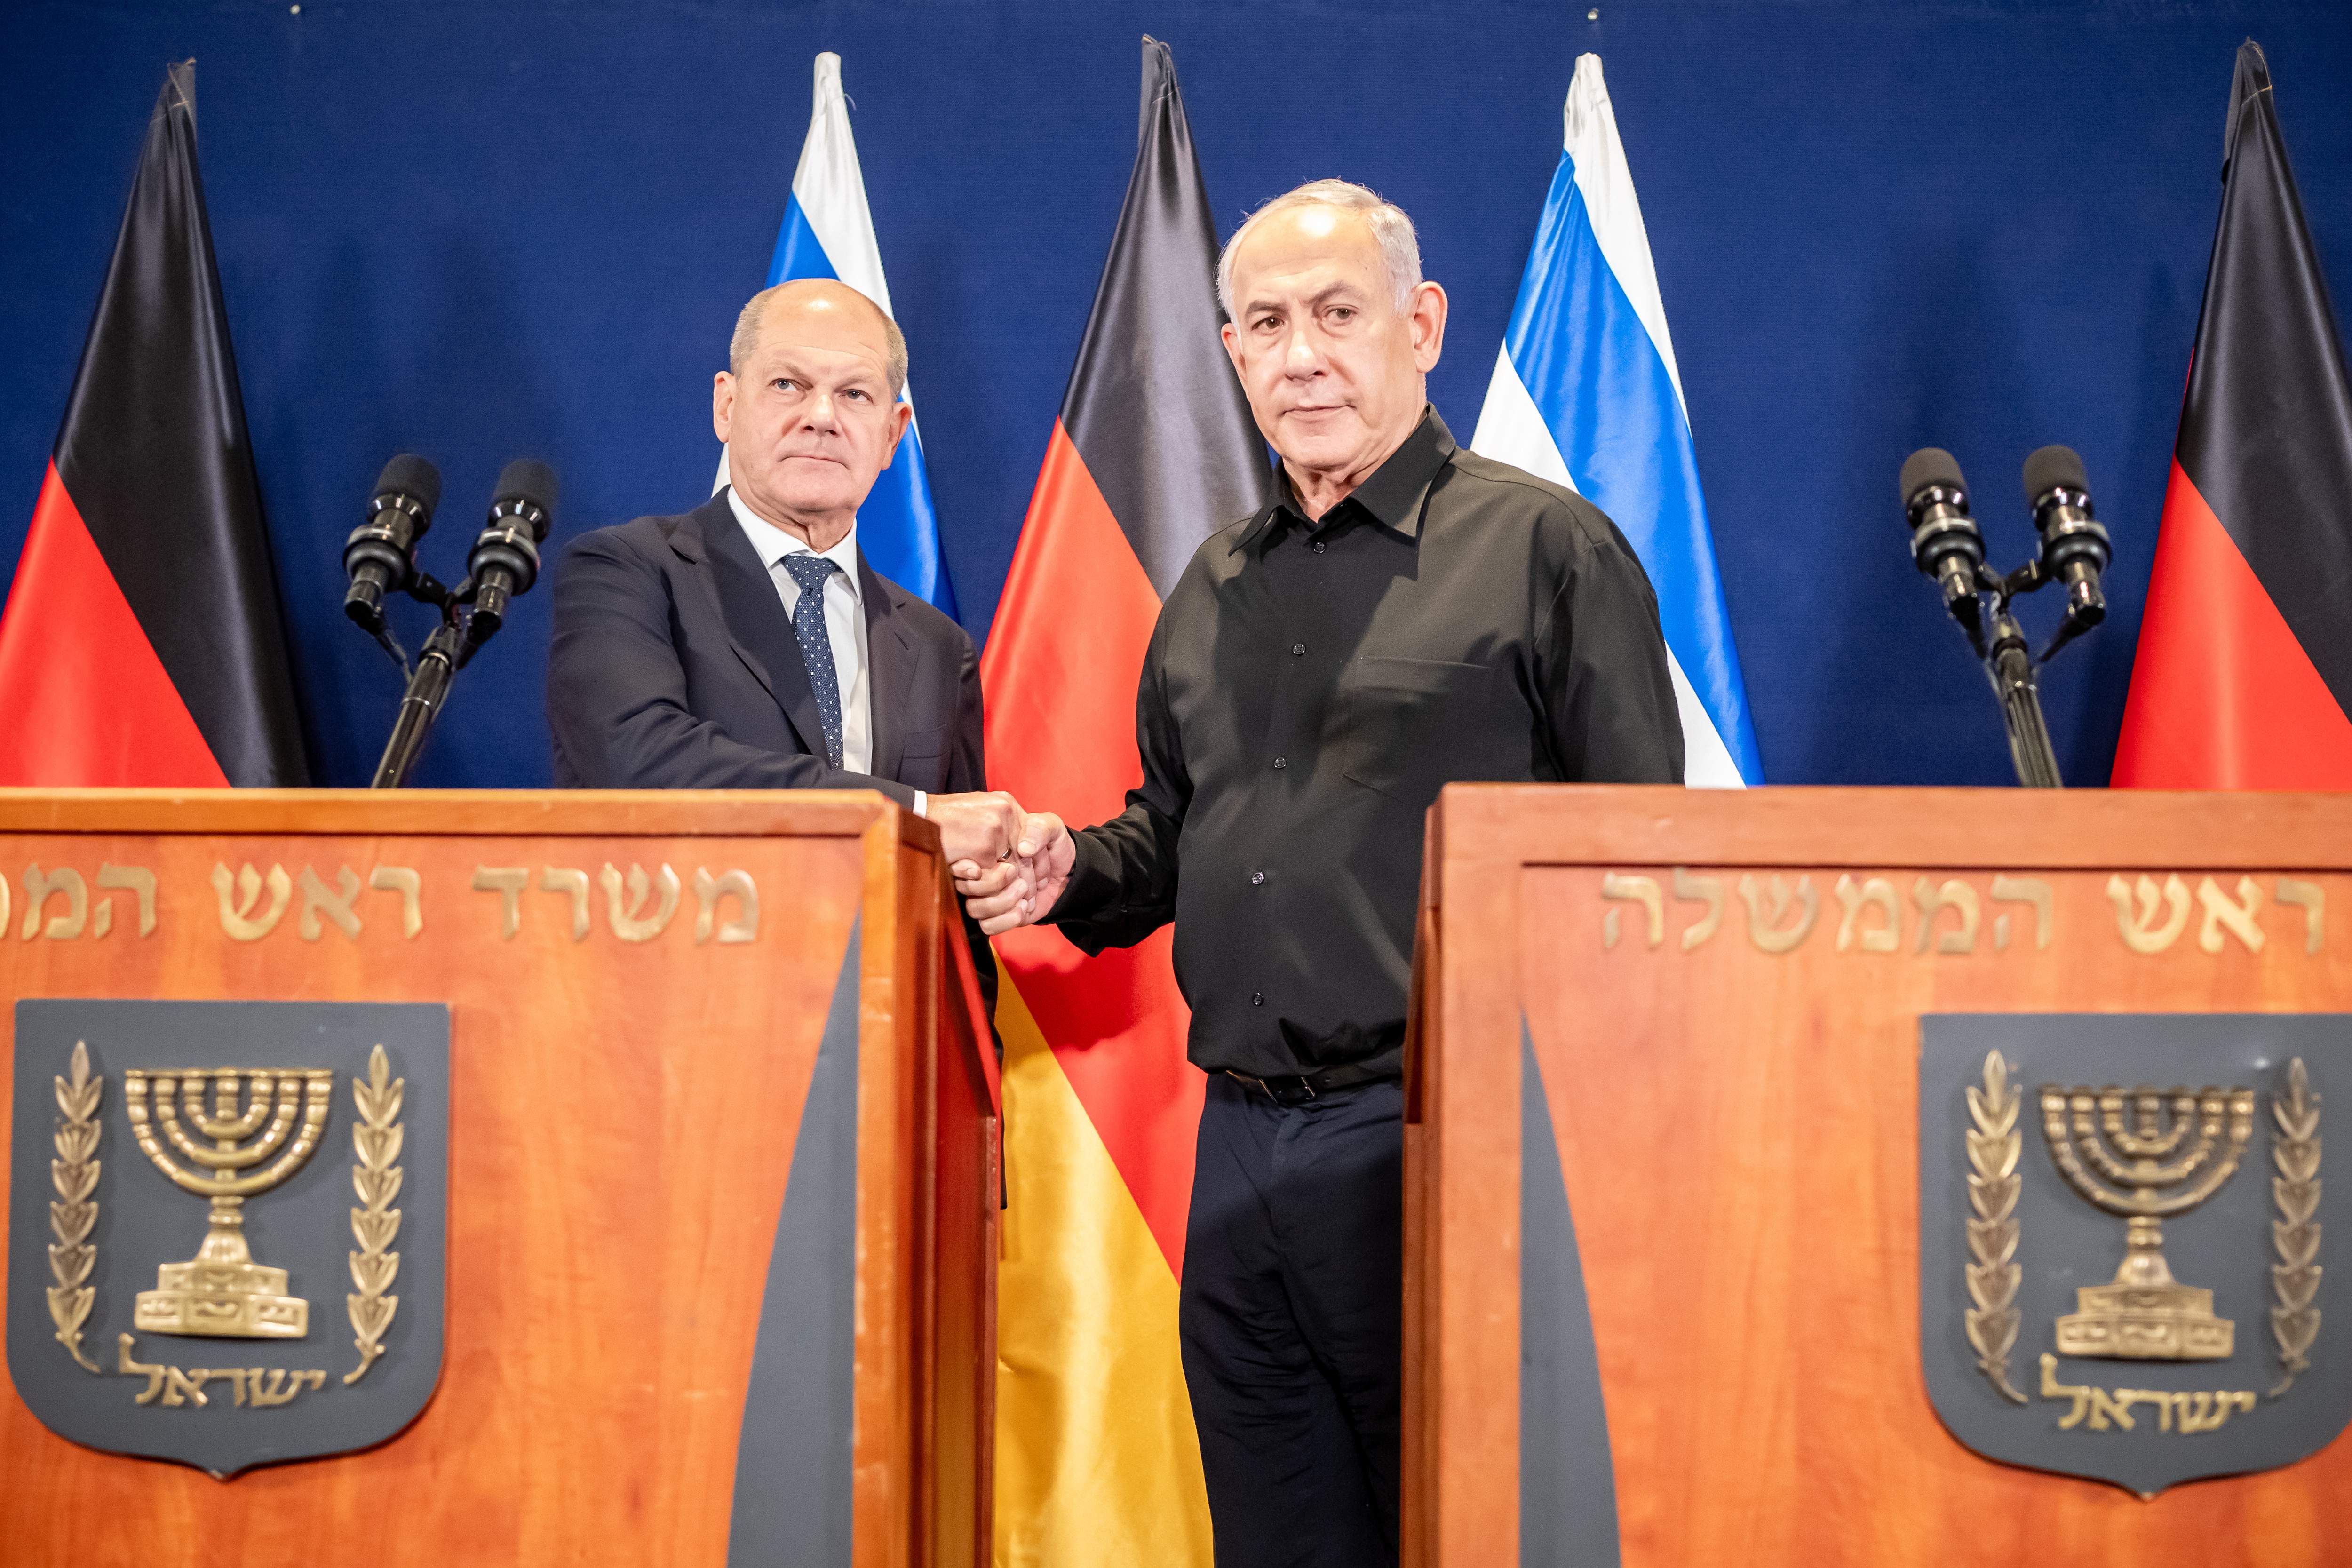 El Tribunal de La Haya avala la venta de armas de Alemania a Israel pese al riesgo de genocidio